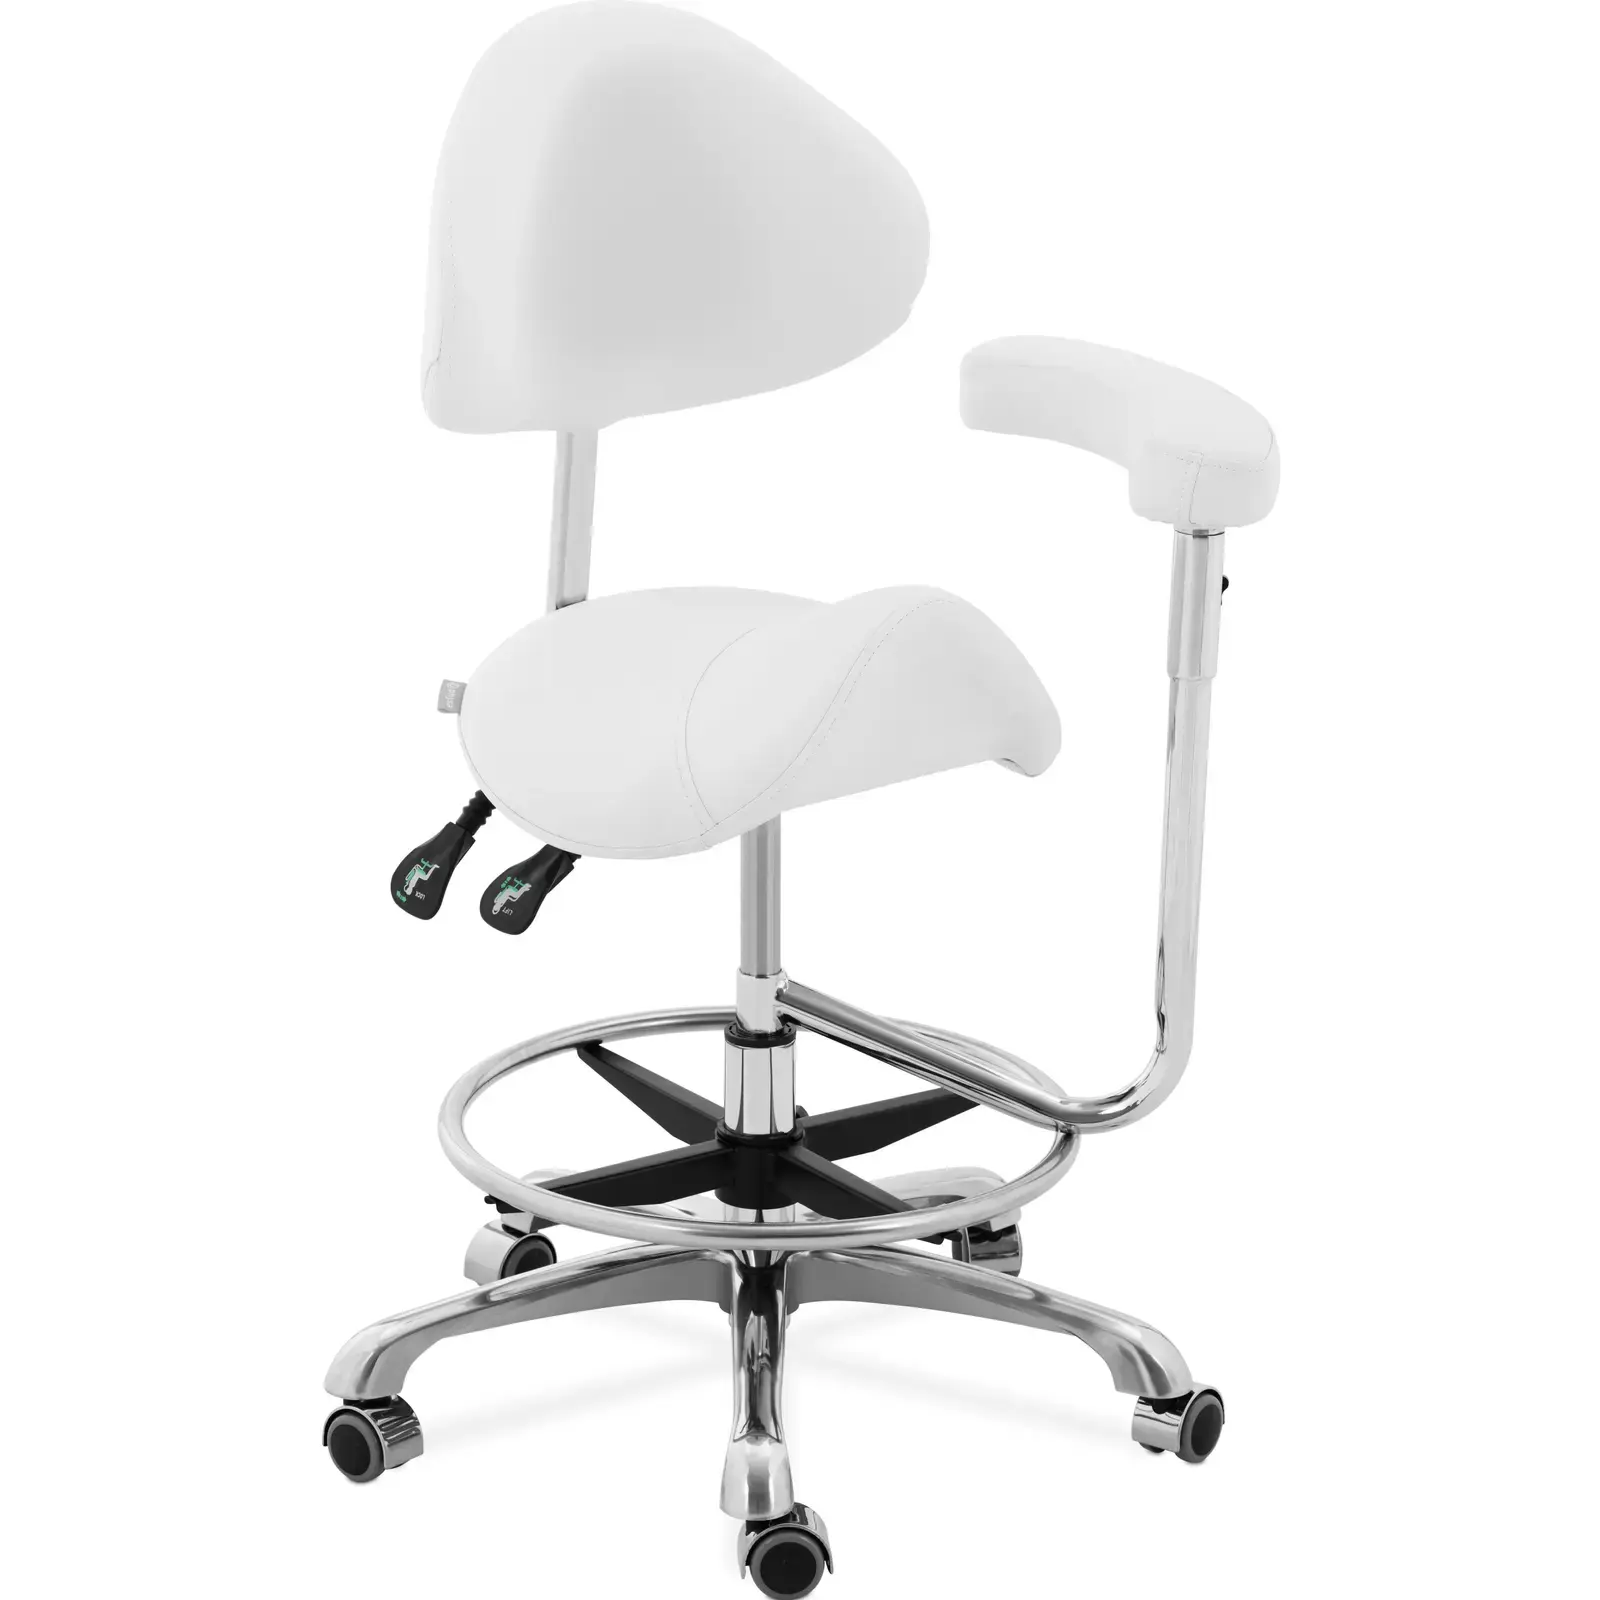 physa Zadel stoel - In hoogte verstelbare rugleuning en zitting - 51-61 cm - 150 kg - White